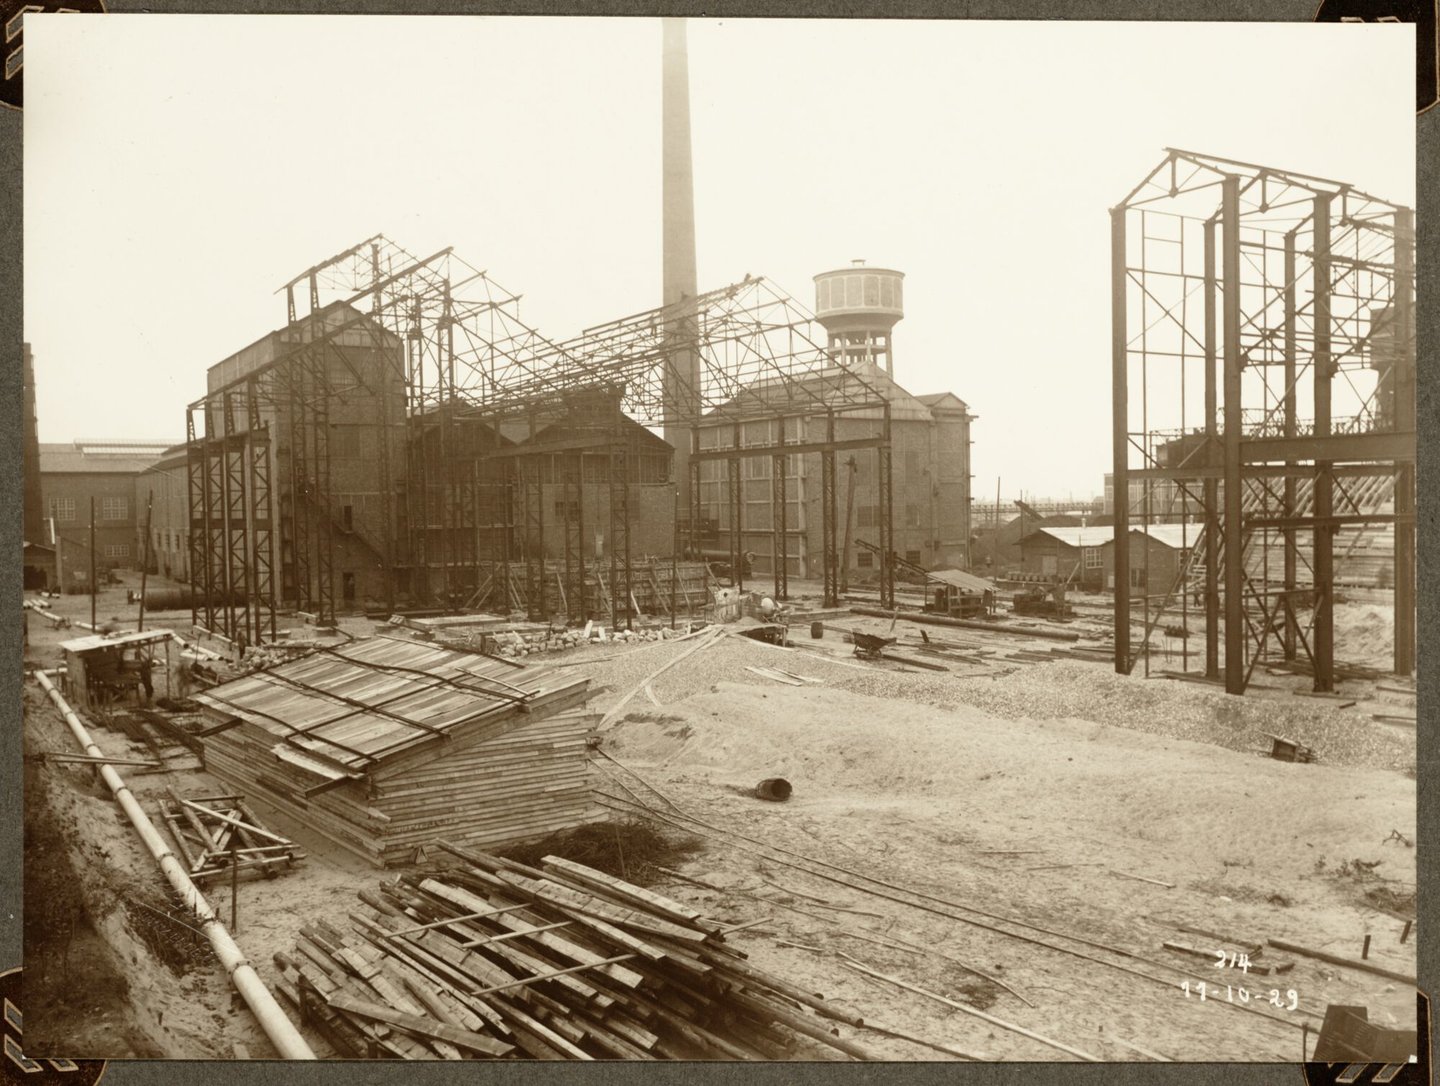 Bouw van ammoniakfabriek en N.E.C.-gebouw van cokesfabriek Kuhlmann in Zelzate